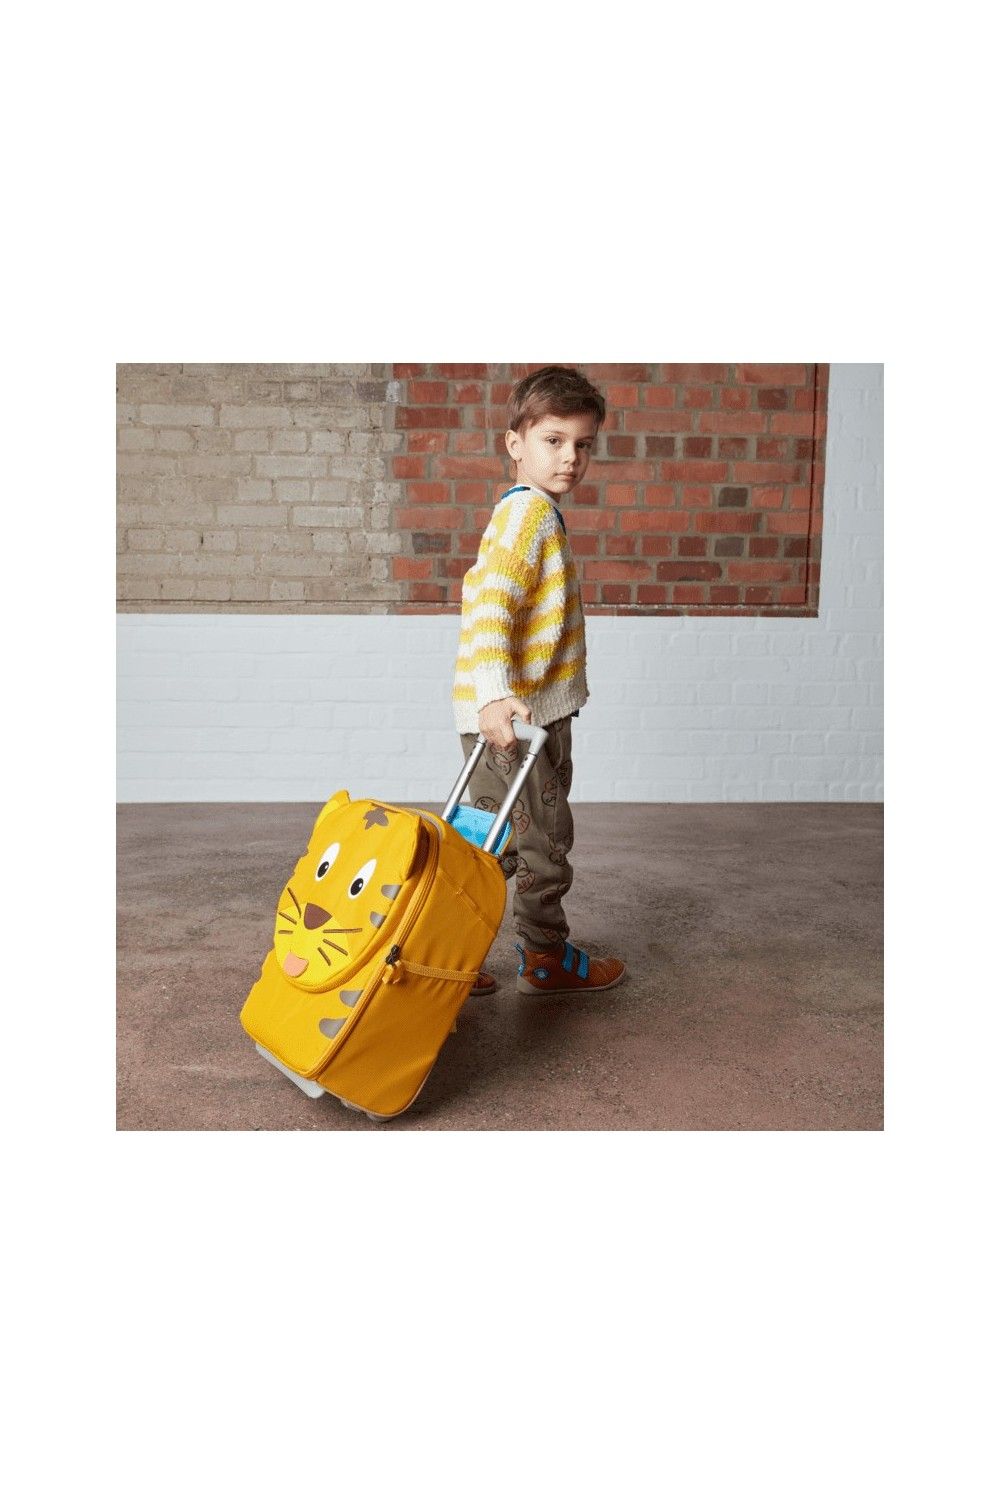 Affenzahn children's suitcase Tiger 40cm 2 wheel